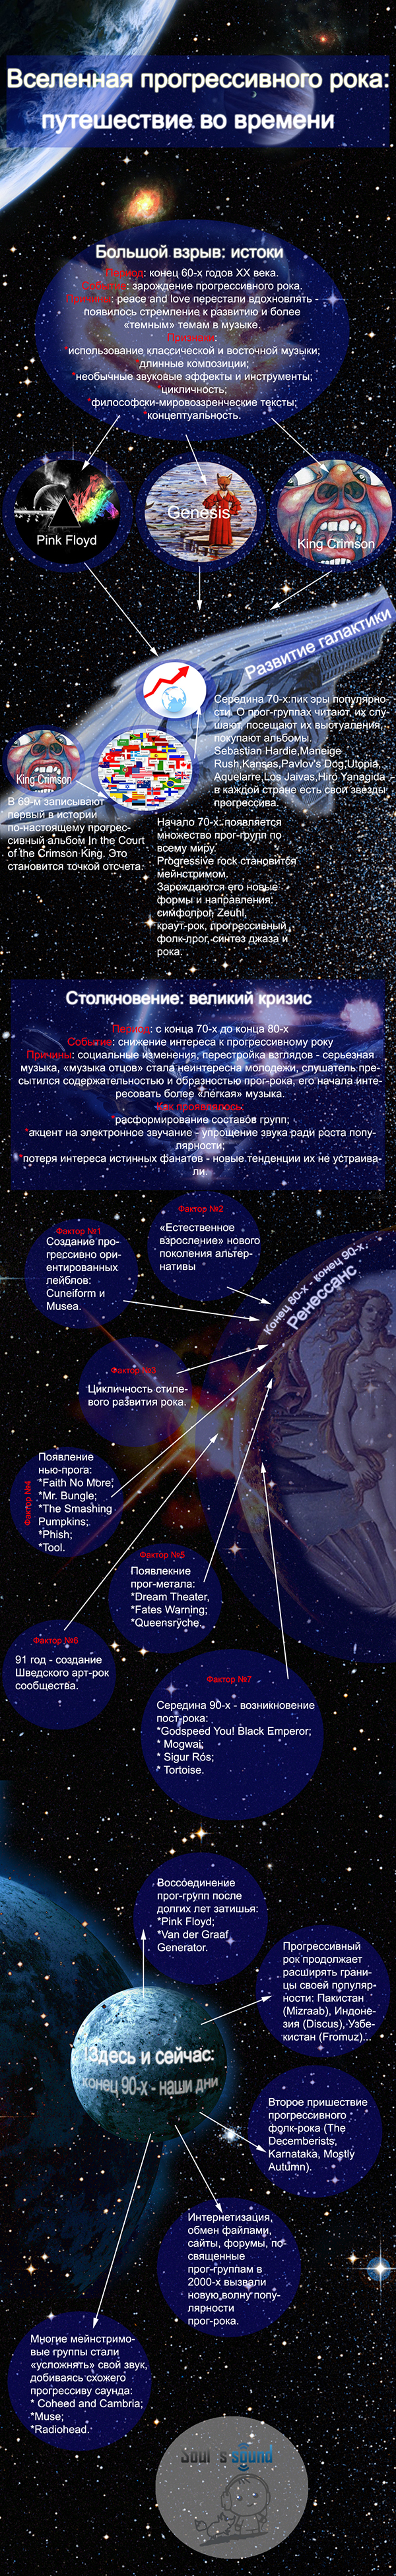 Вселенная прогрессивного рока: путешествие во времени (инфографика)